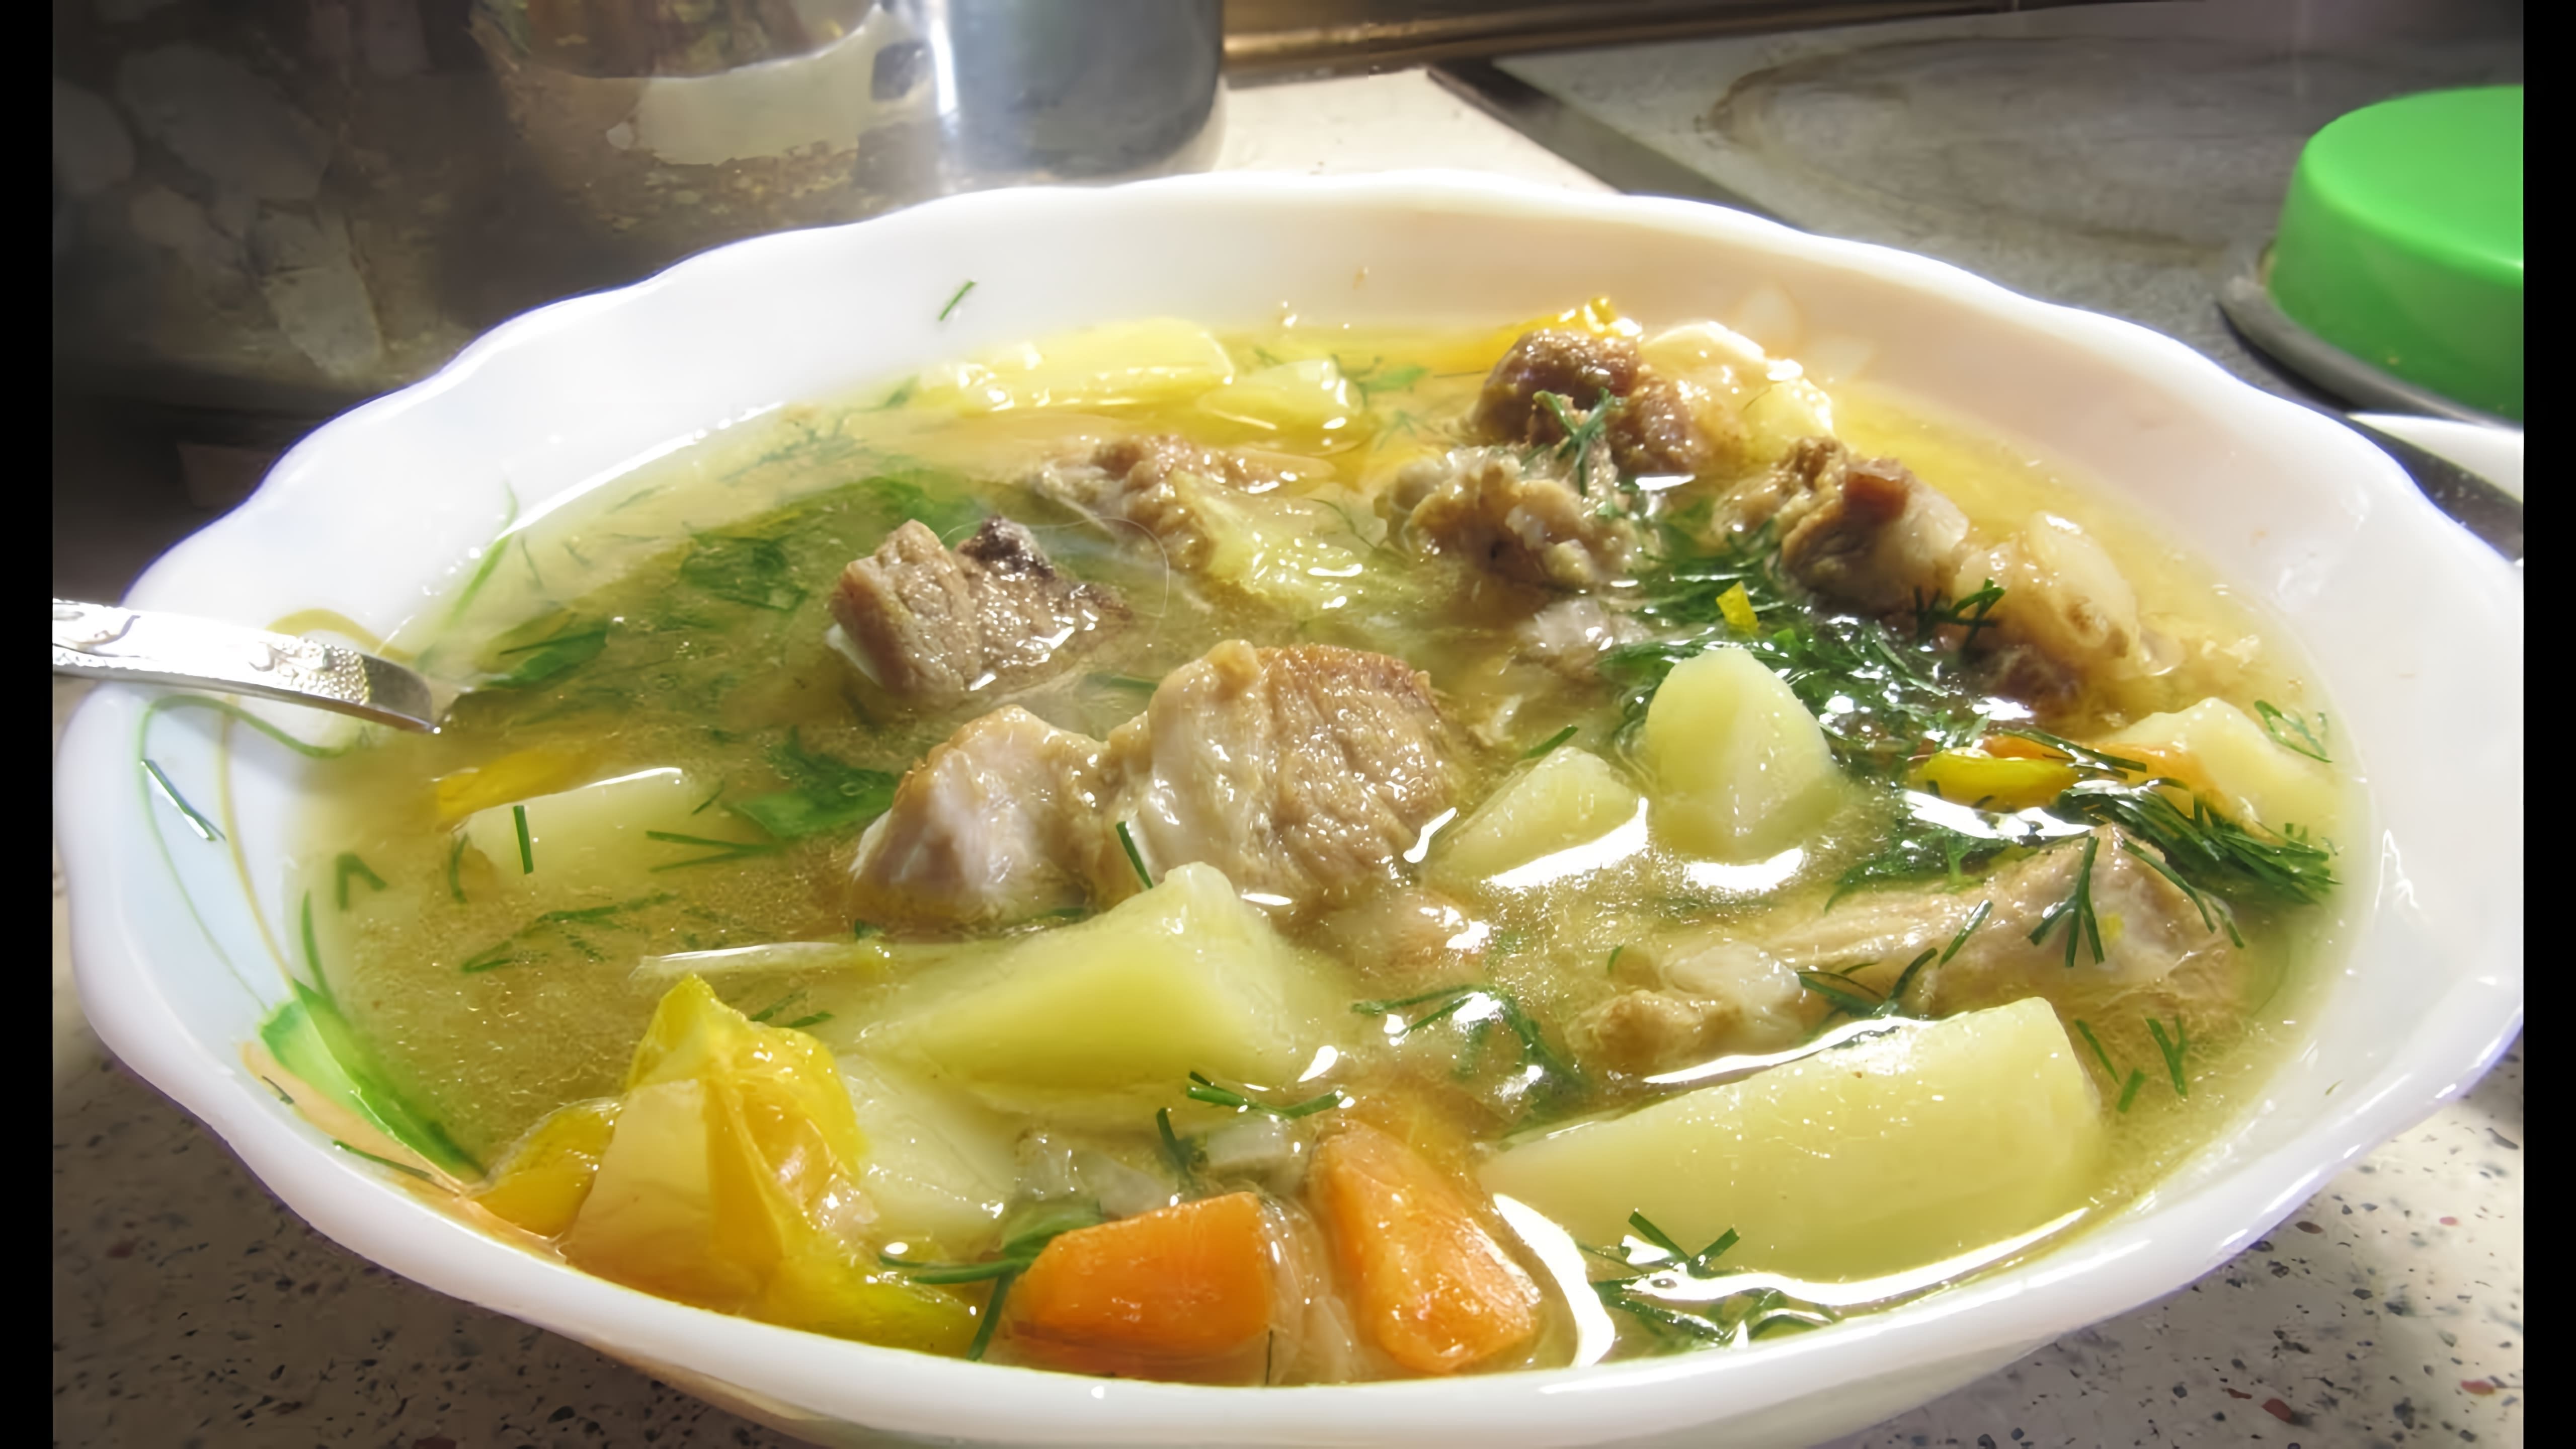 Видео рецепт шурпы - сытного супа из свинины, овощей и картофеля